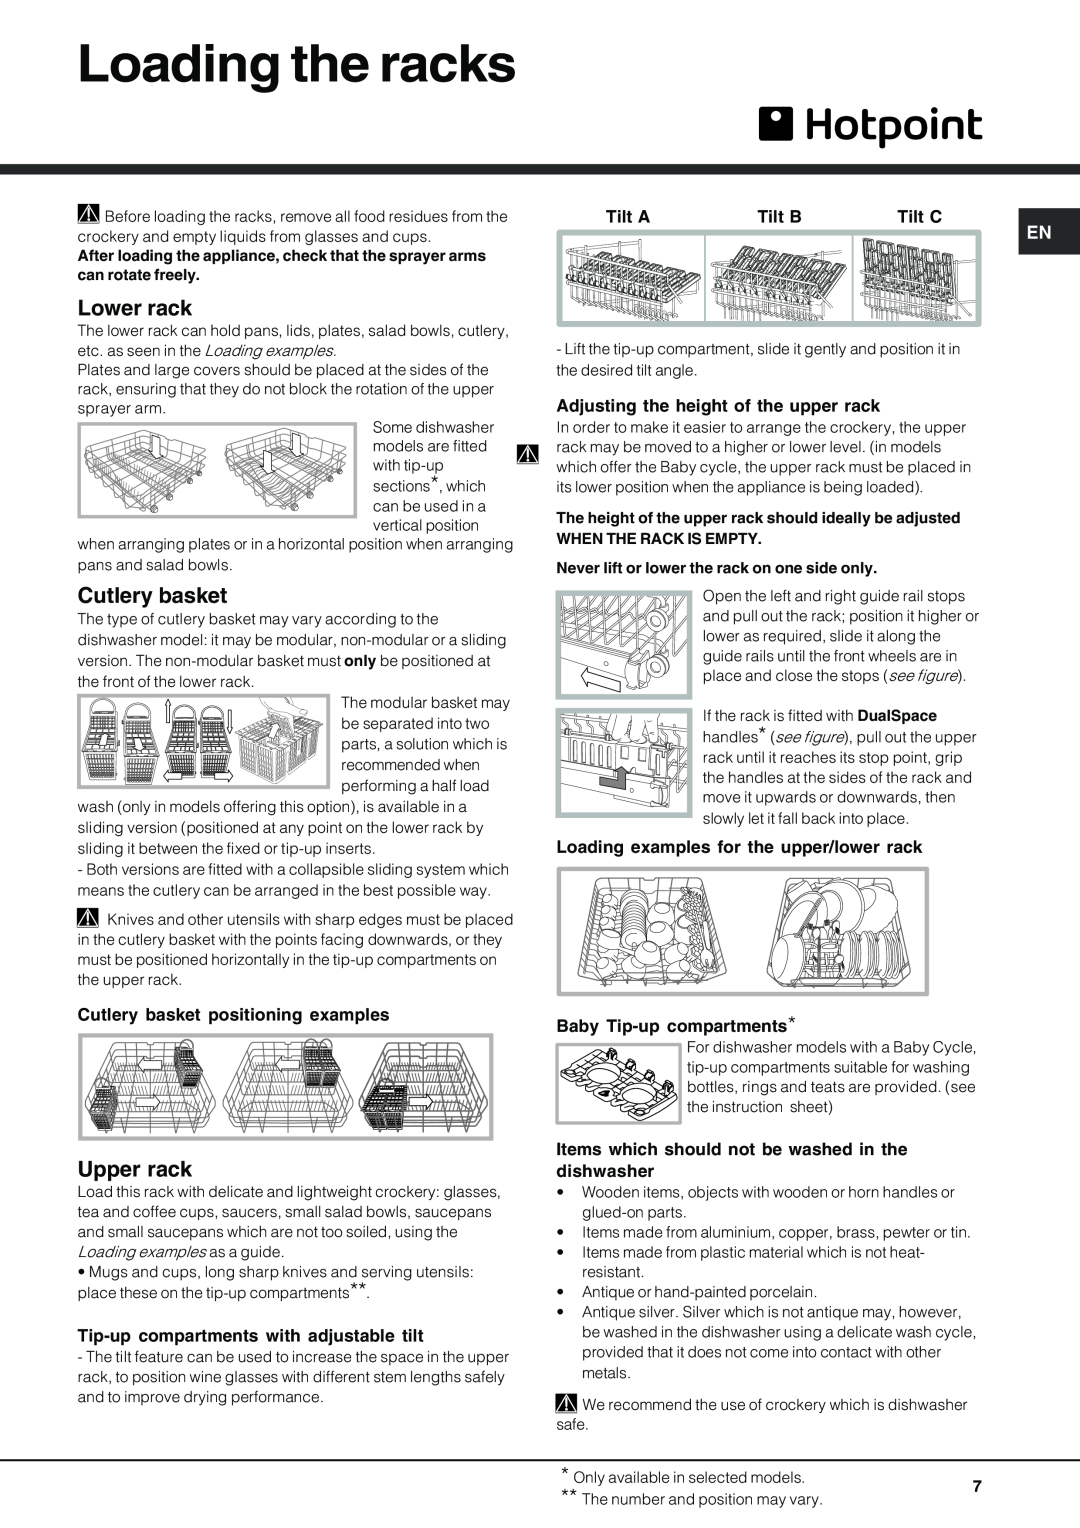 Hotpoint FDUD 4812 manual Loading the racks, Lower rack, Cutlery basket, Upper rack, Tilt A, Tilt B, Tilt C 